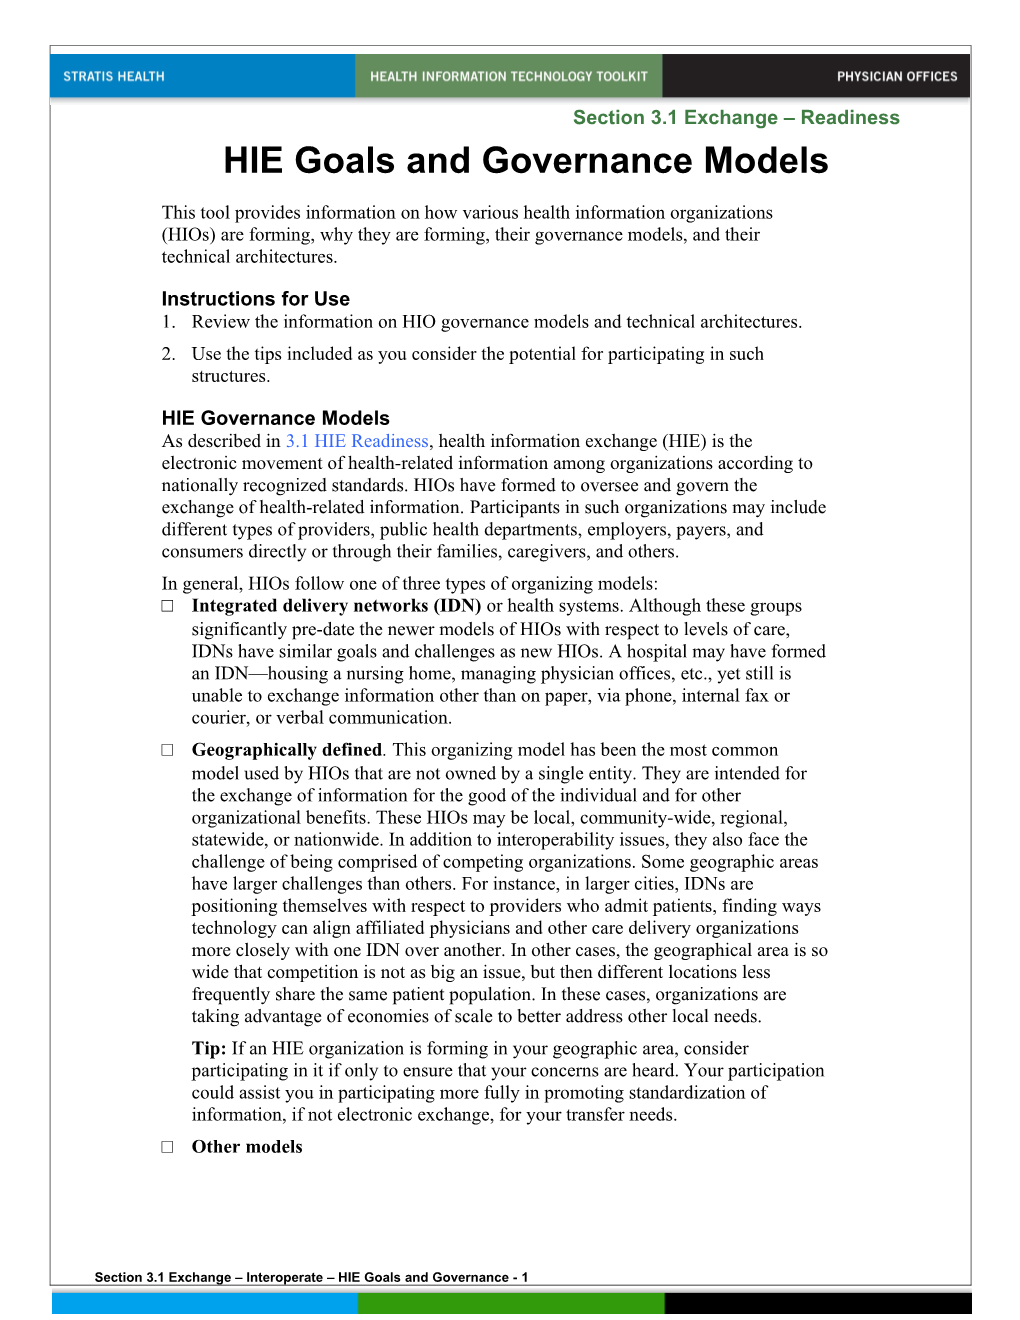 HIE Goals and Governance Models